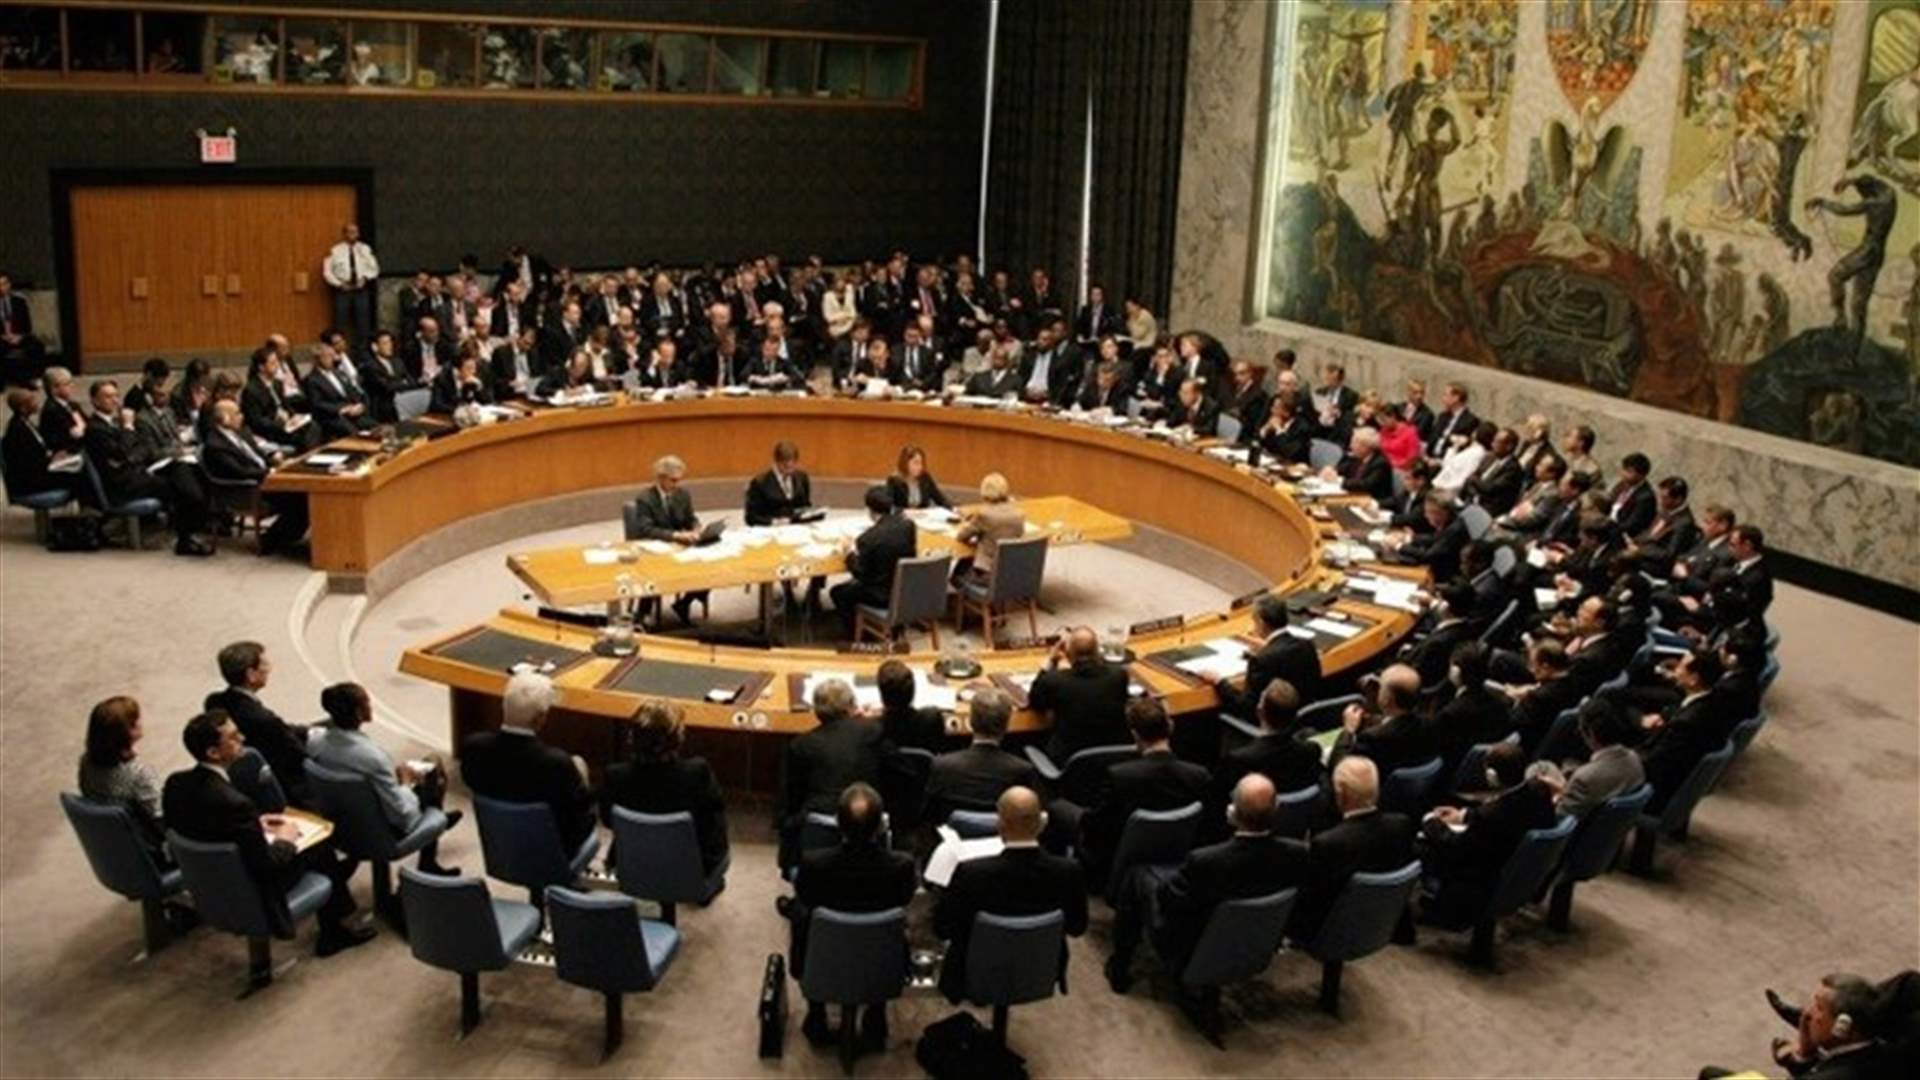 موسكو وواشنطن تعرقلان تمديد مهمة الأمم المتحدة السياسية في ليبيا